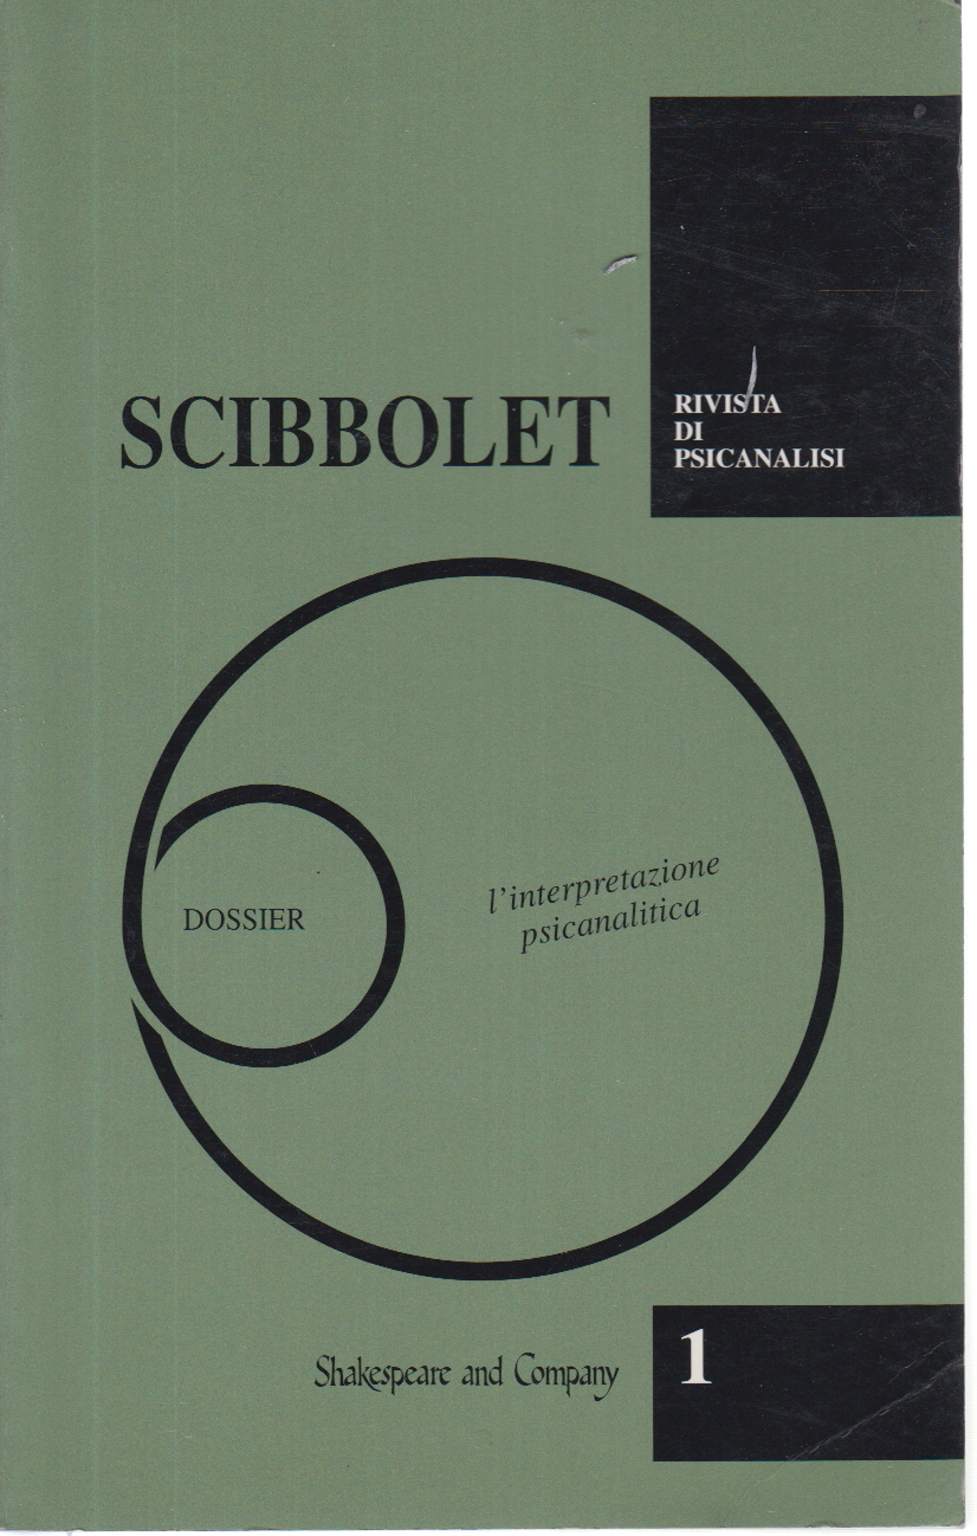 Scibbolet no. 1 de 1994, s.una.